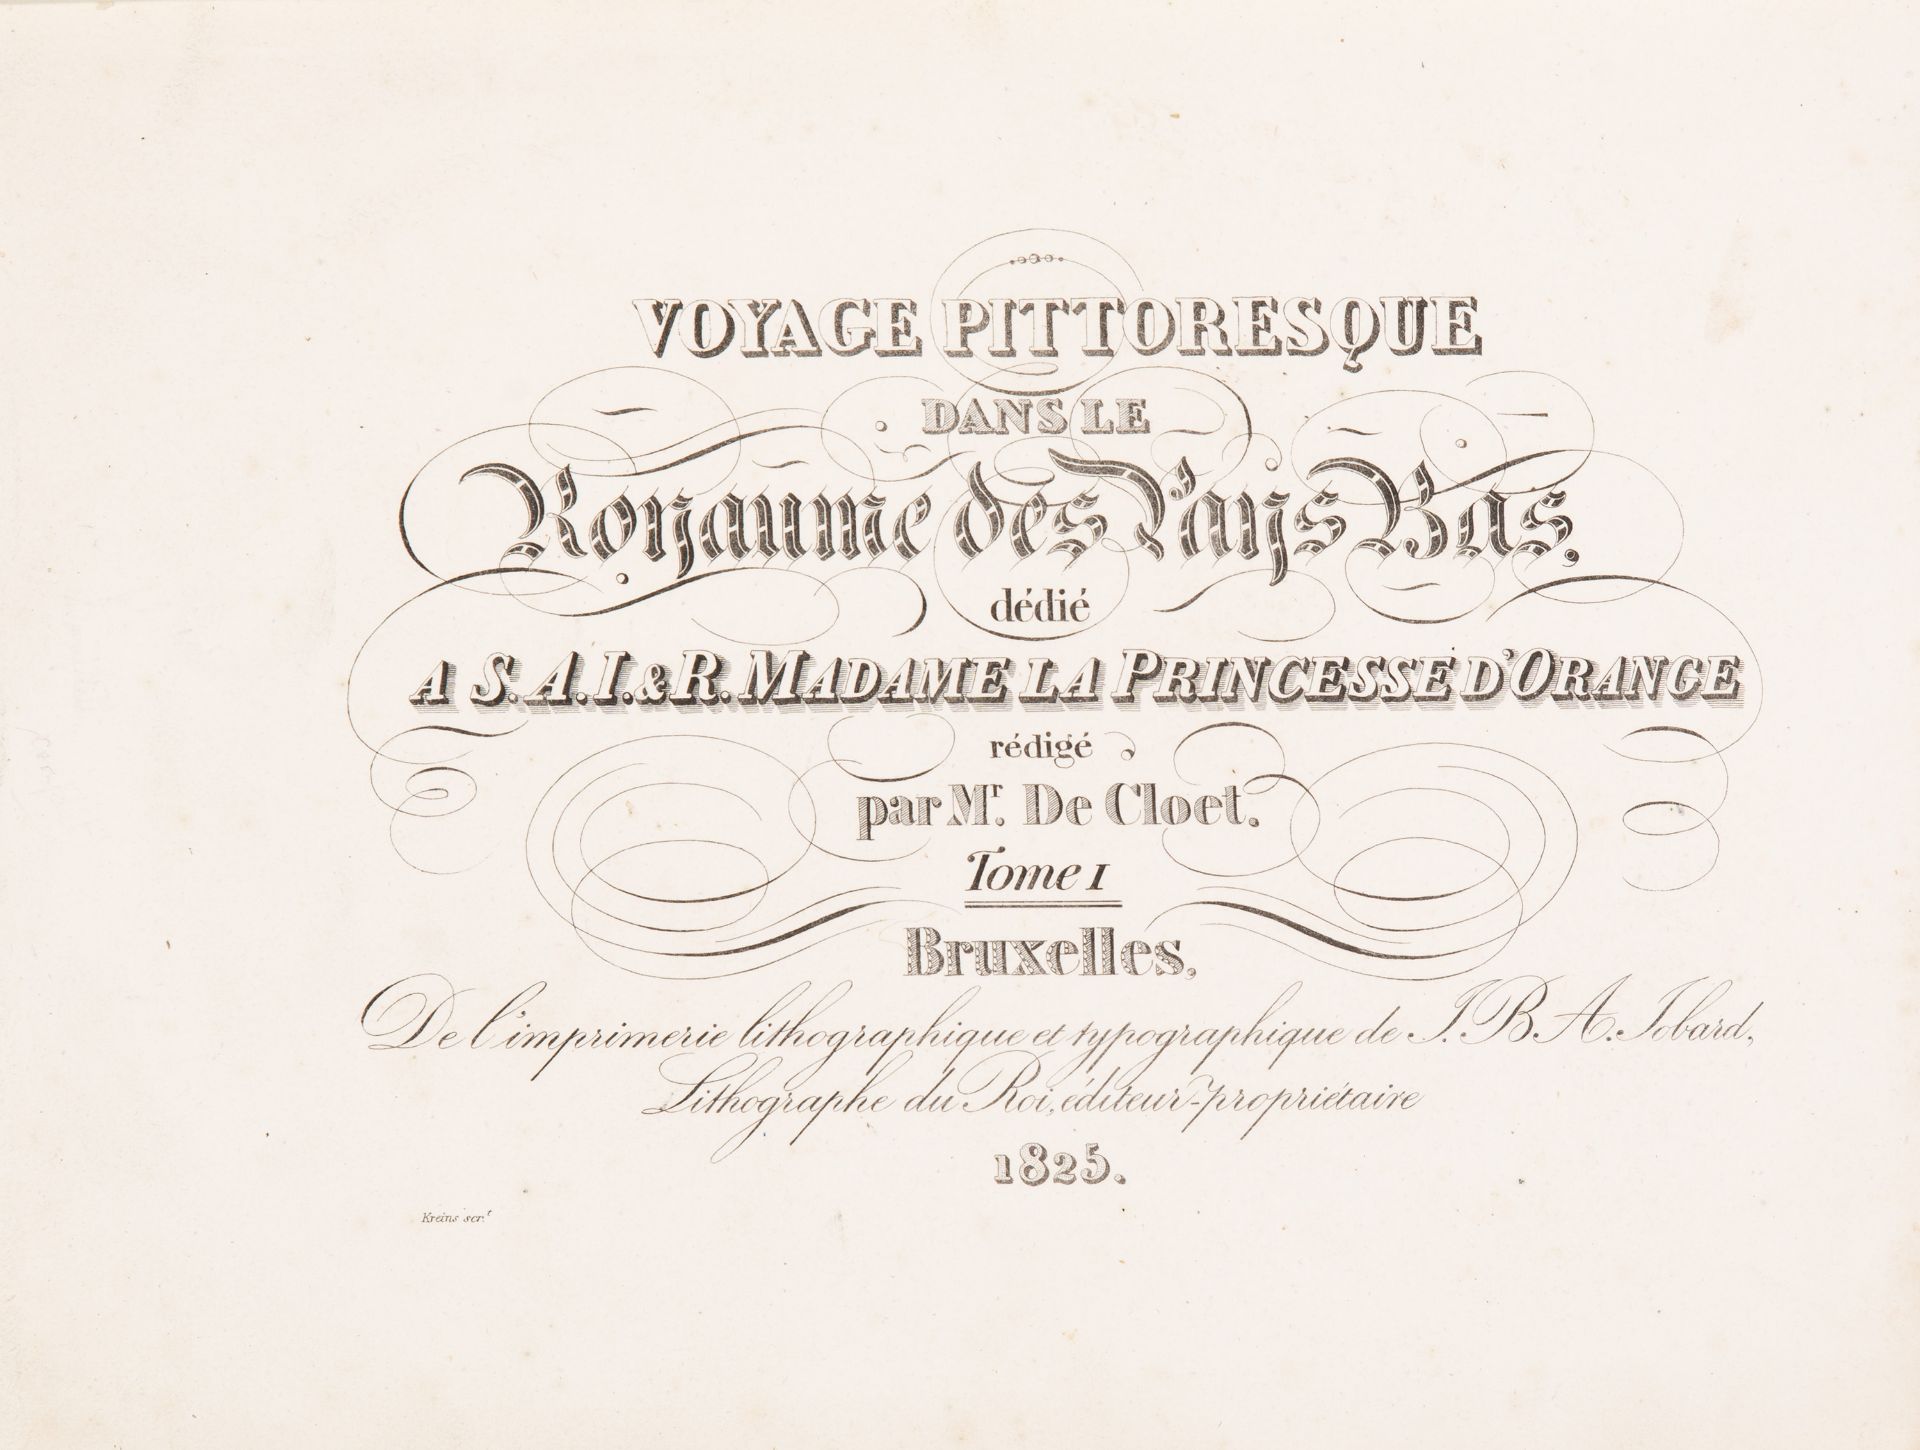 J. J. de Cloet, Voyage pittoresque dans les Pays Bas. Brüssel 1825.